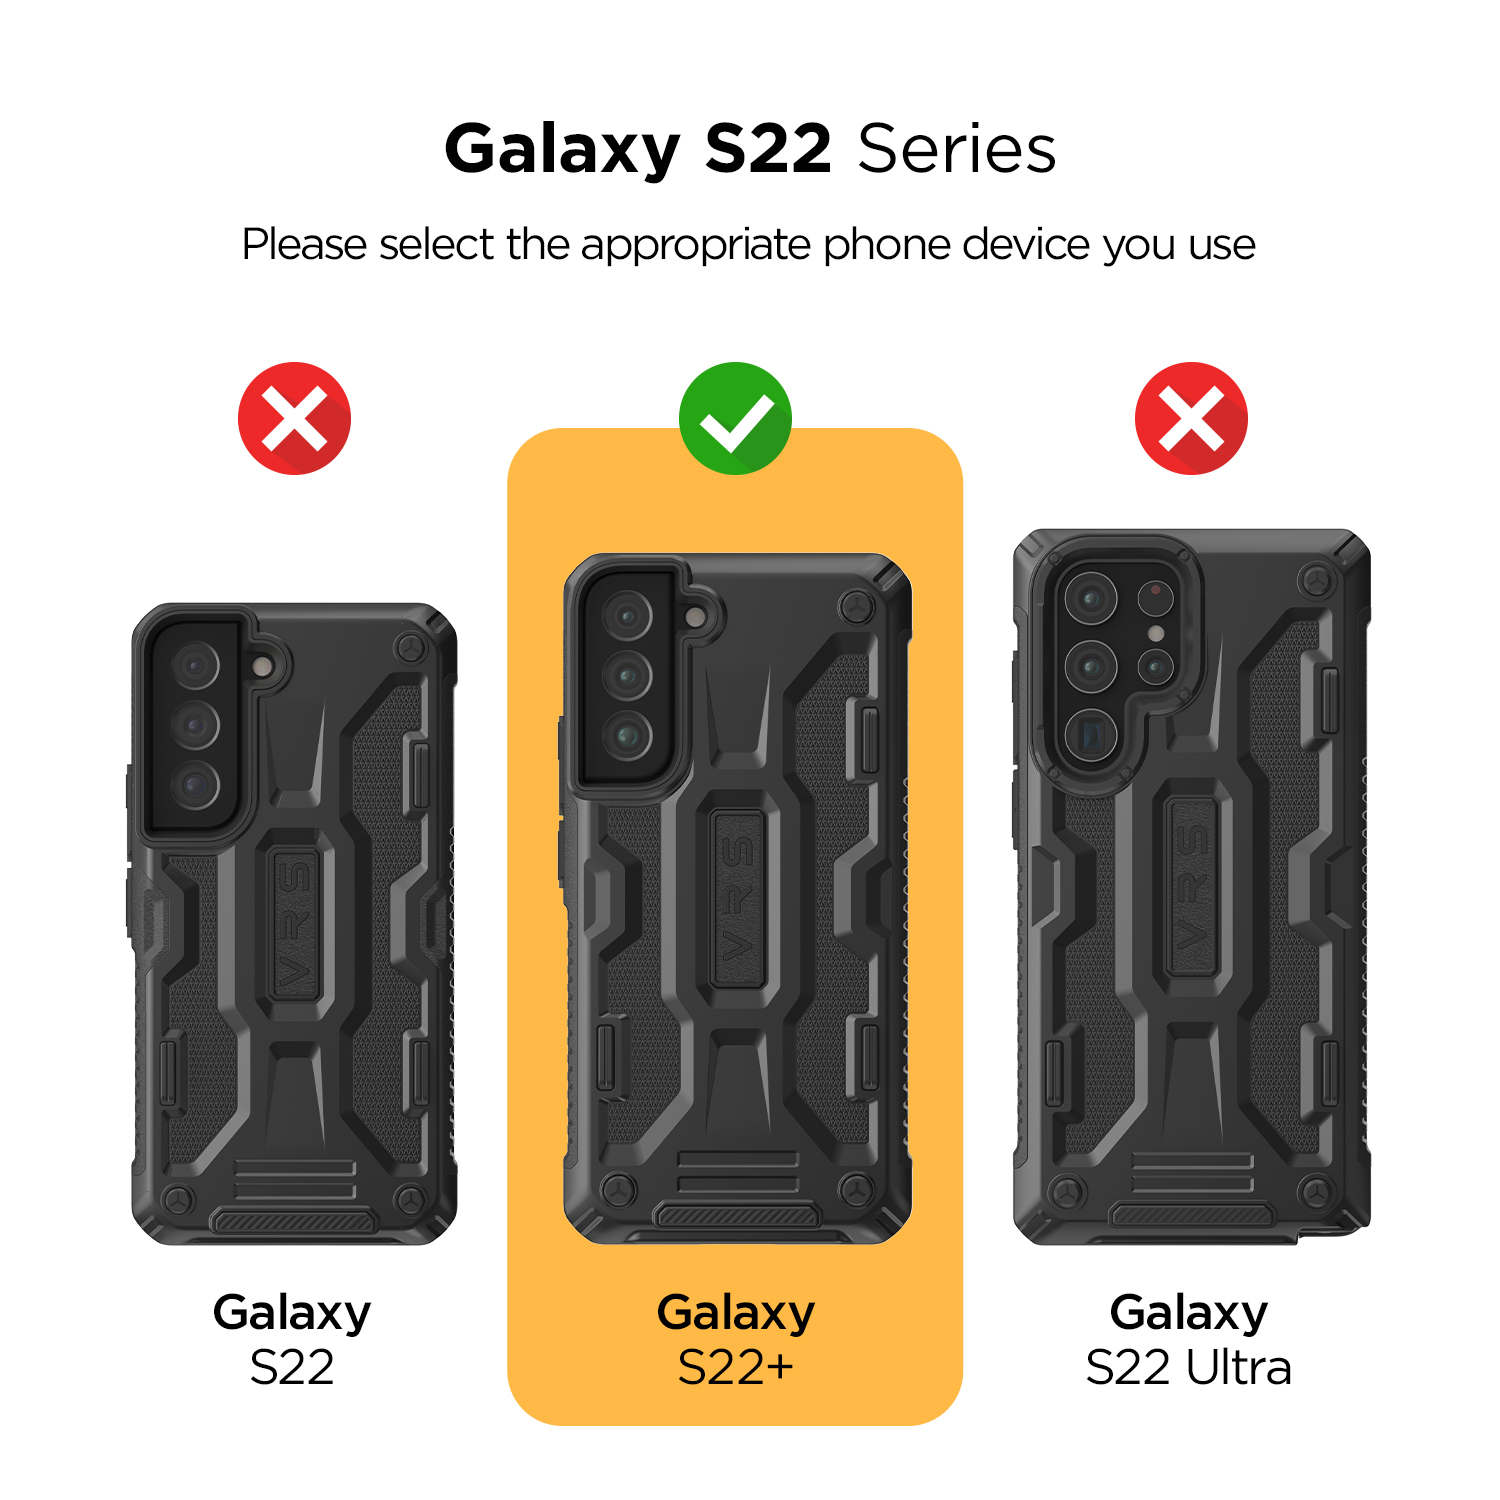 เคส VRS รุ่น Terra Guard - Samsung Galaxy S22 Plus - สีดำ